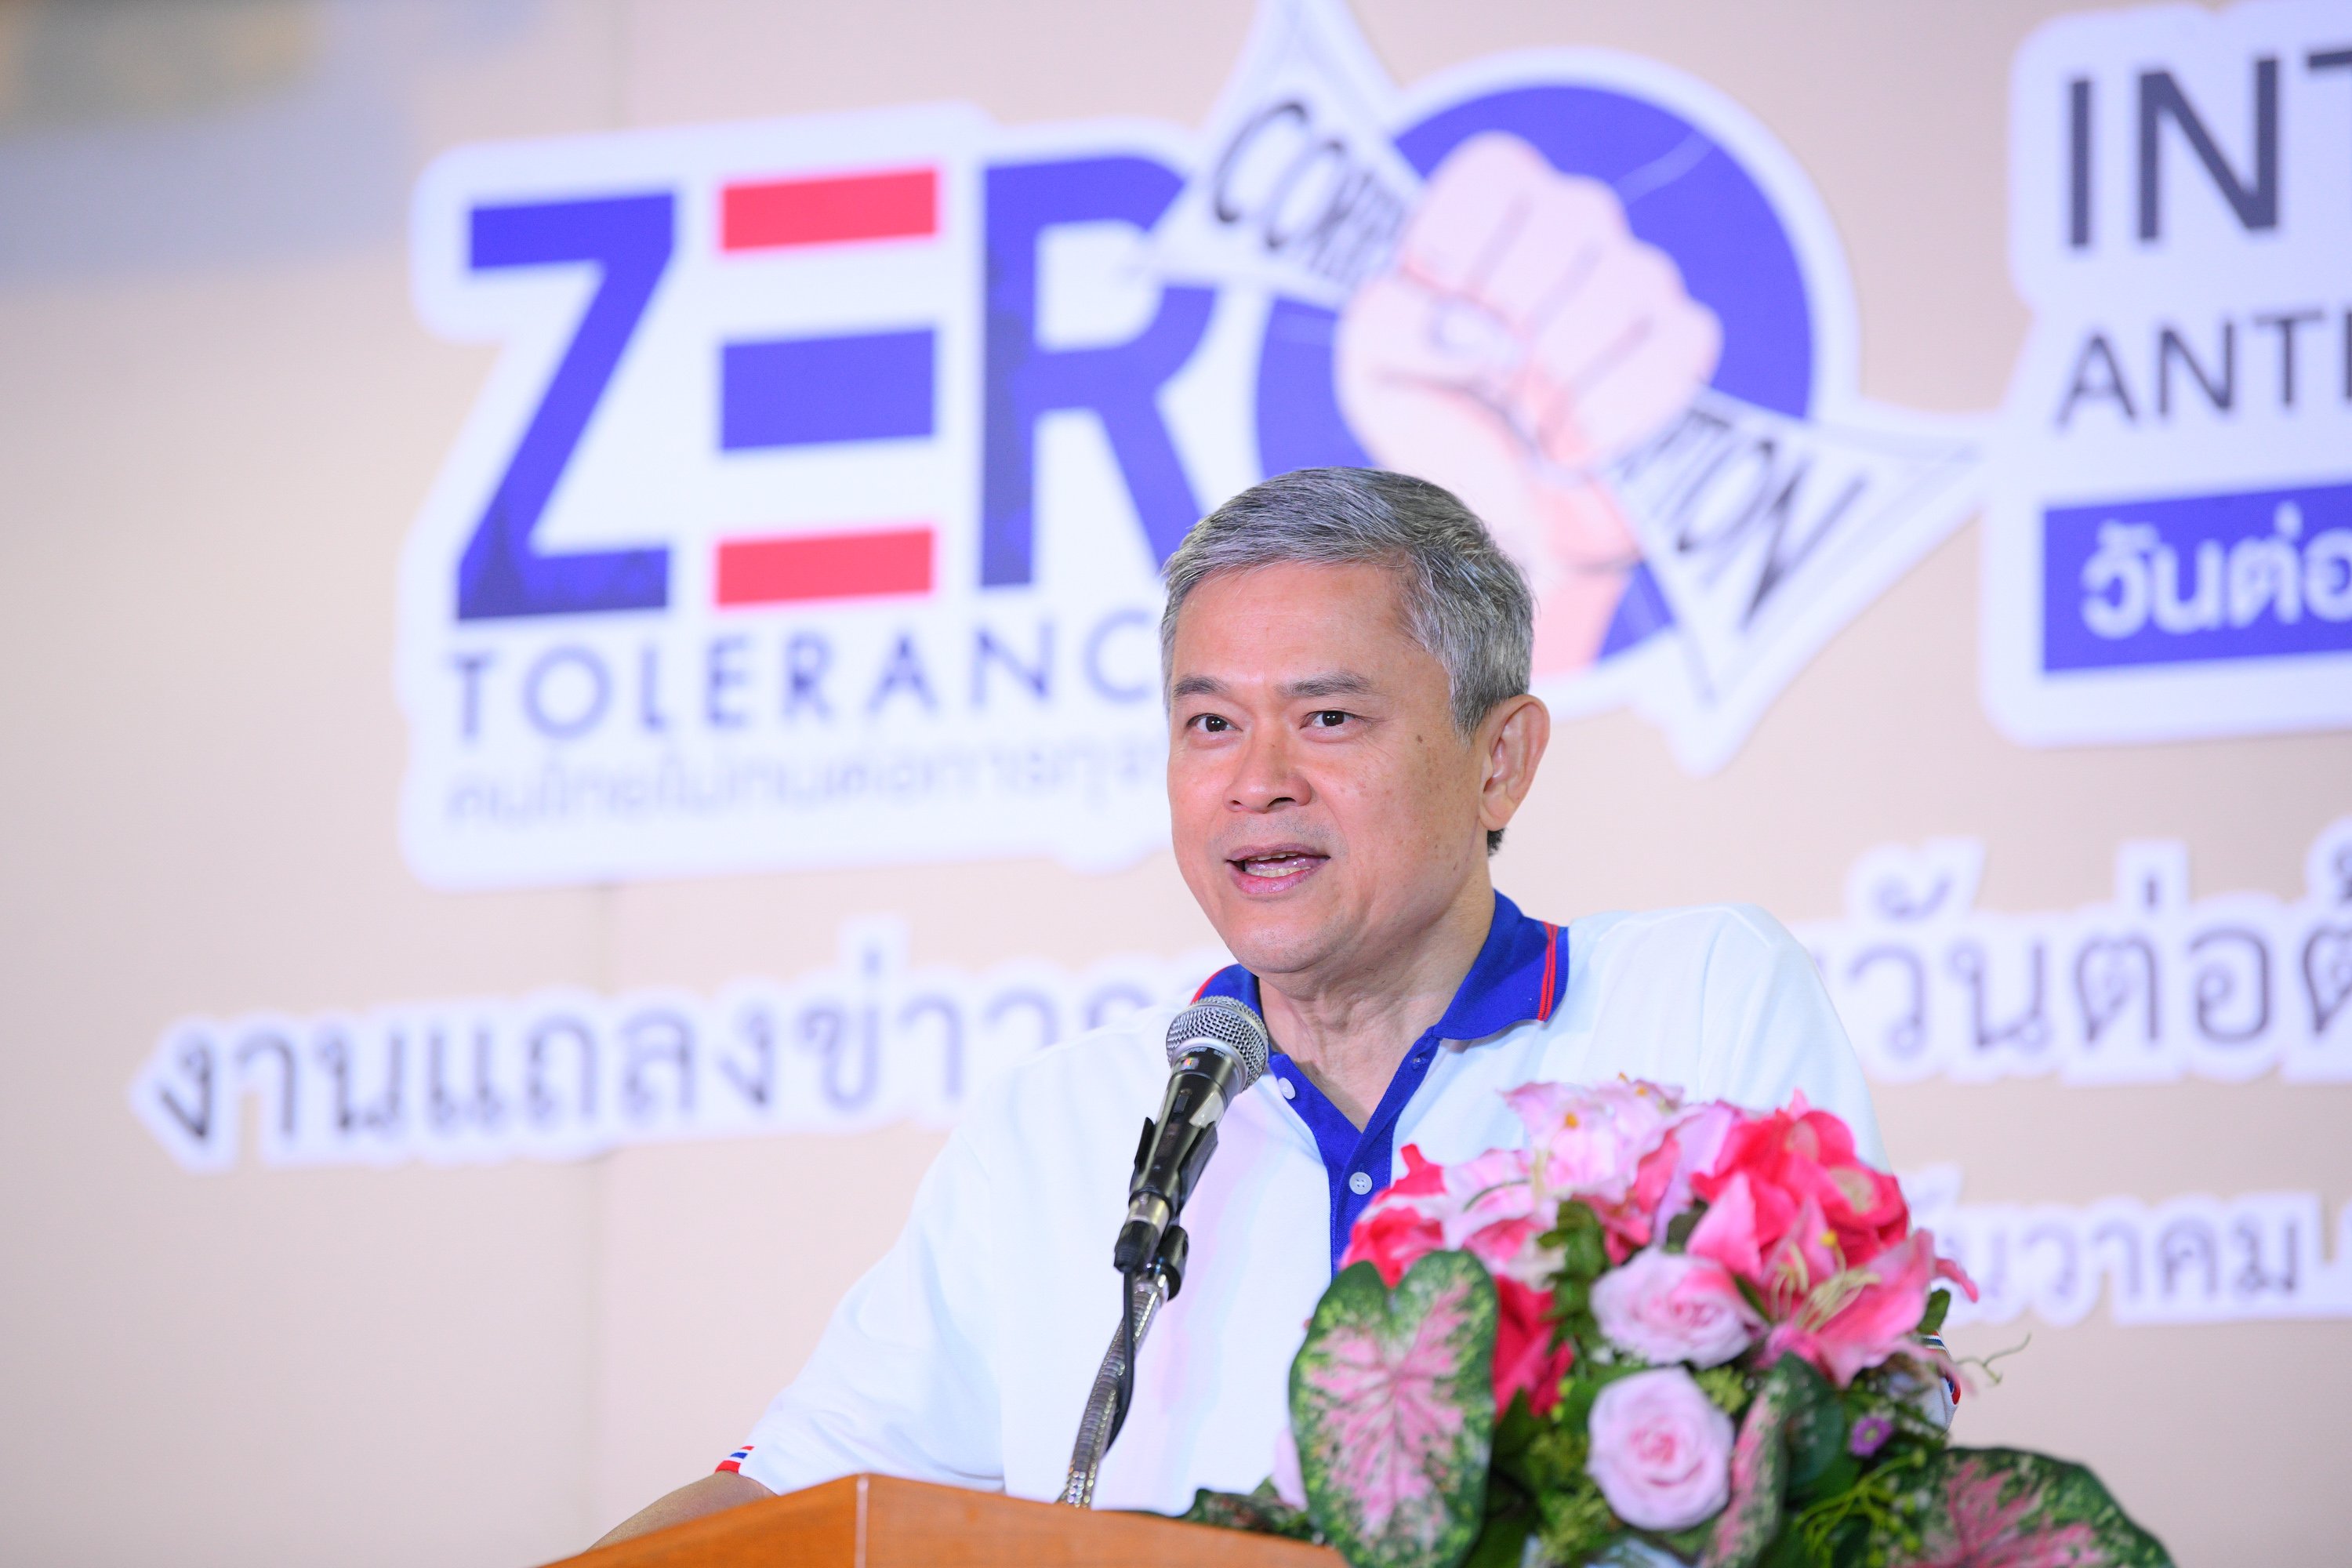 ชูแนวคิด “Zero Tolerance คนไทยไม่ทนต่อการทุจริต” thaihealth